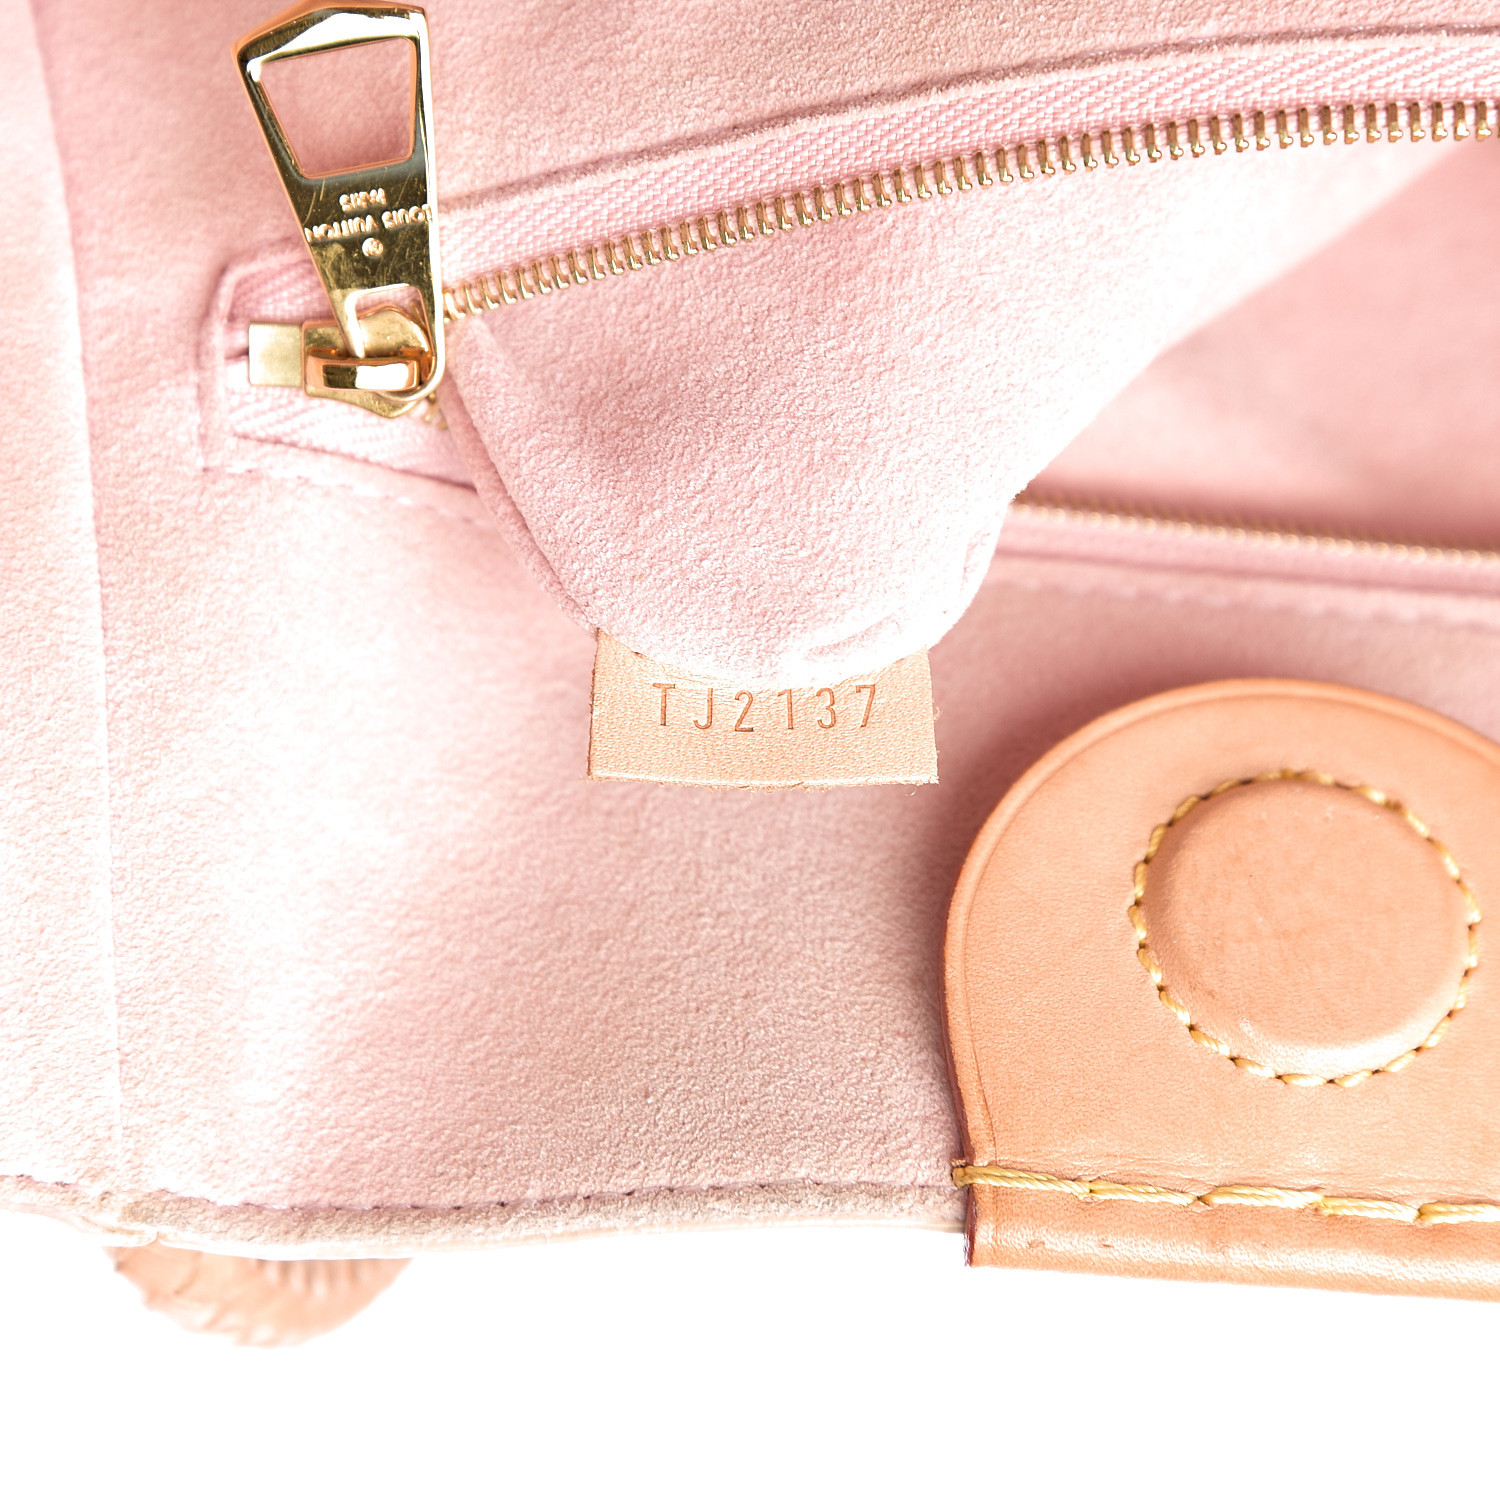 Louis Vuitton Propriano Handbag - Damier Azur with Rose Ballerine Interior